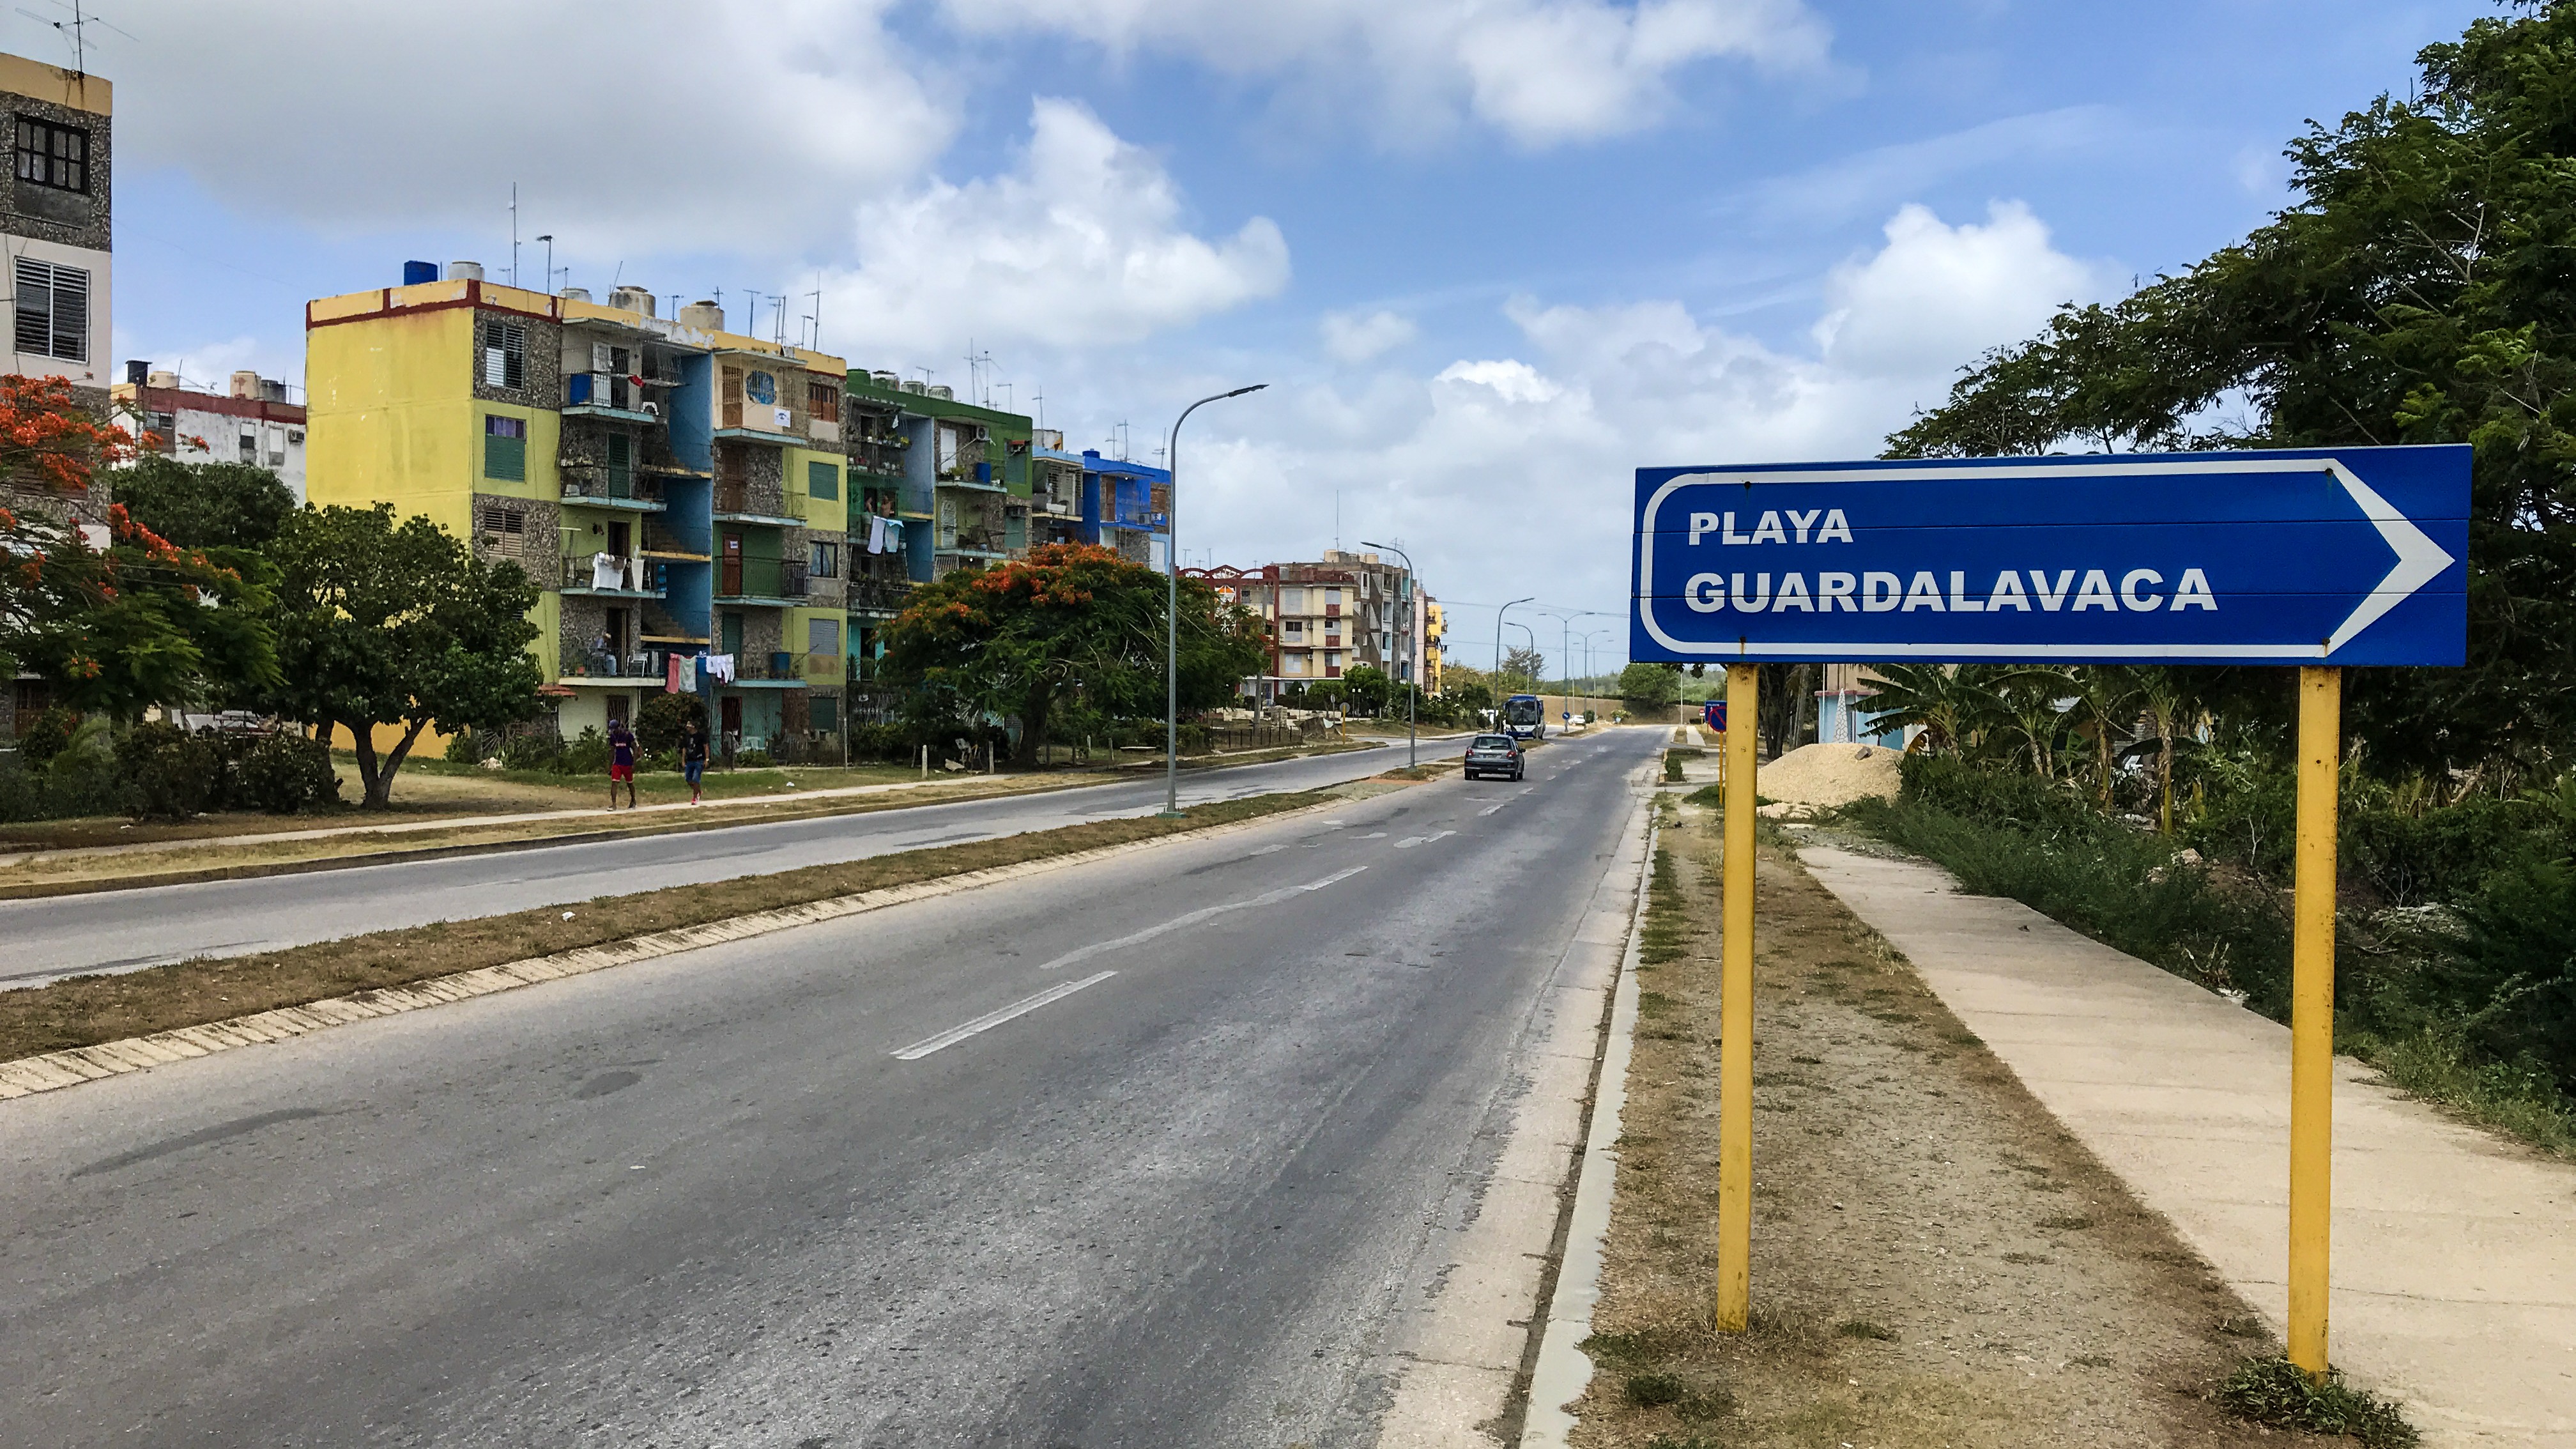 Guardalavaca: Urlaub zwischen Karibiktraum und Planwirtschaft